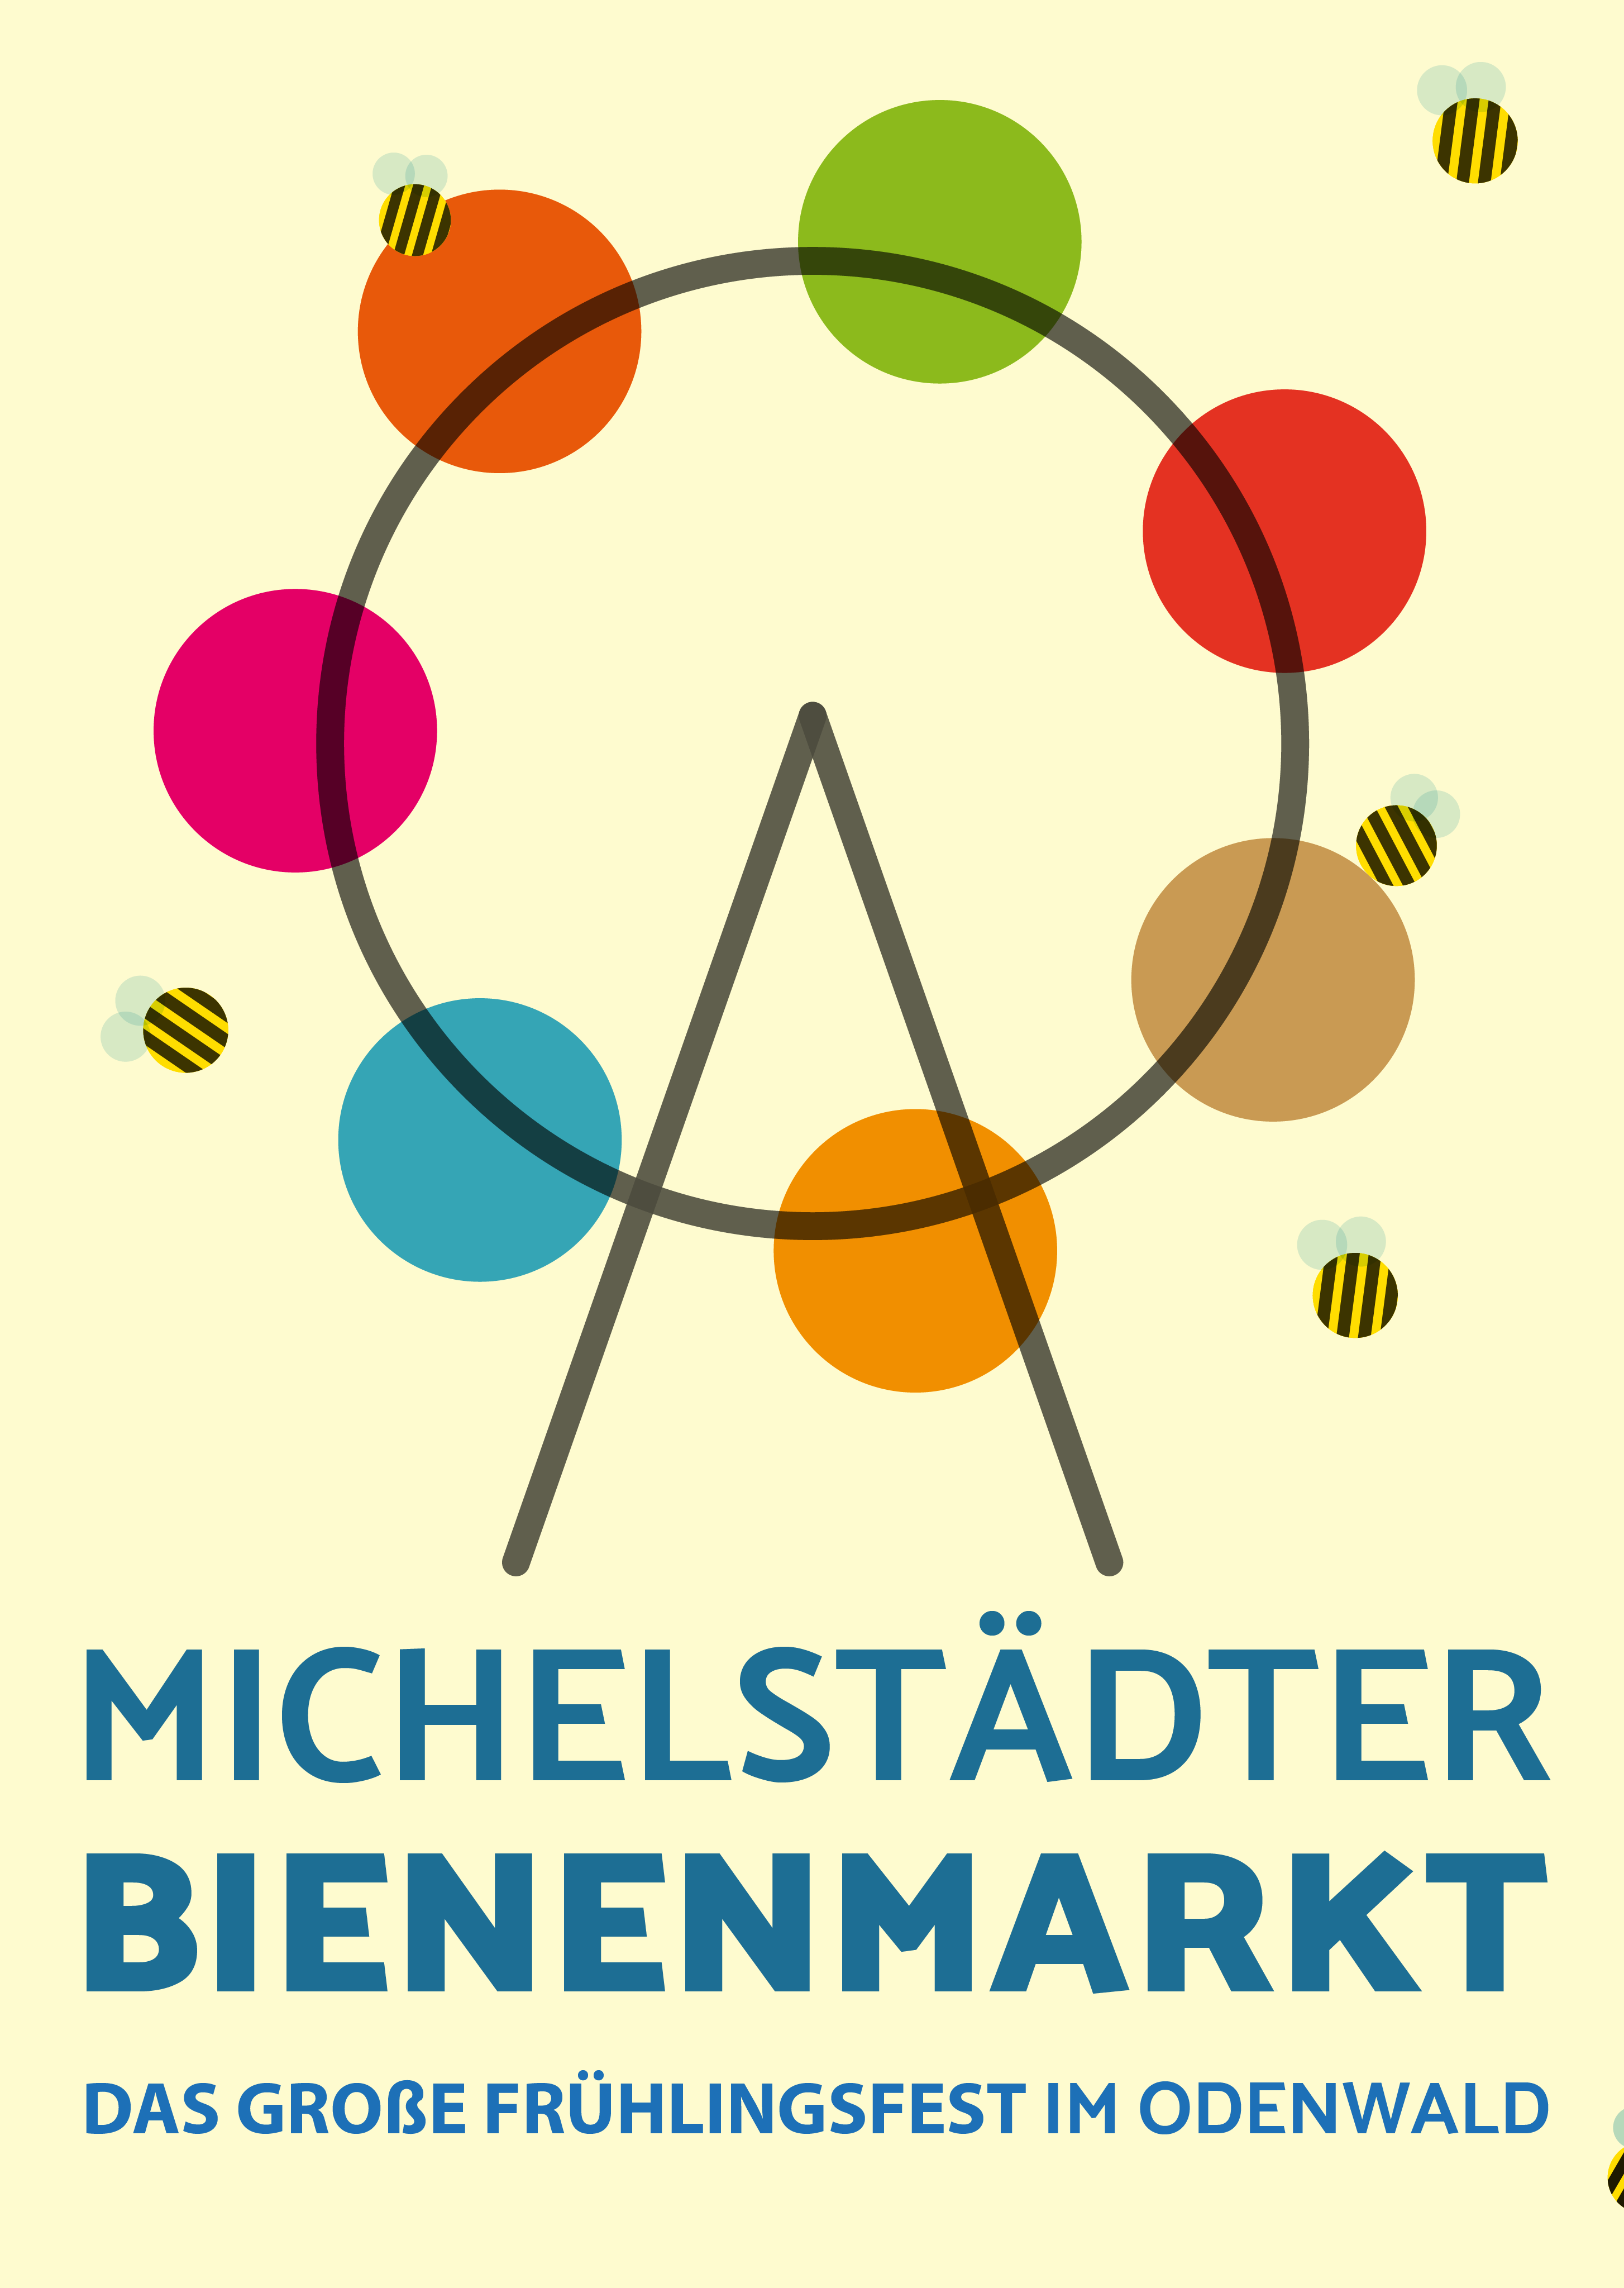 Michelstädter Bienenmarkt